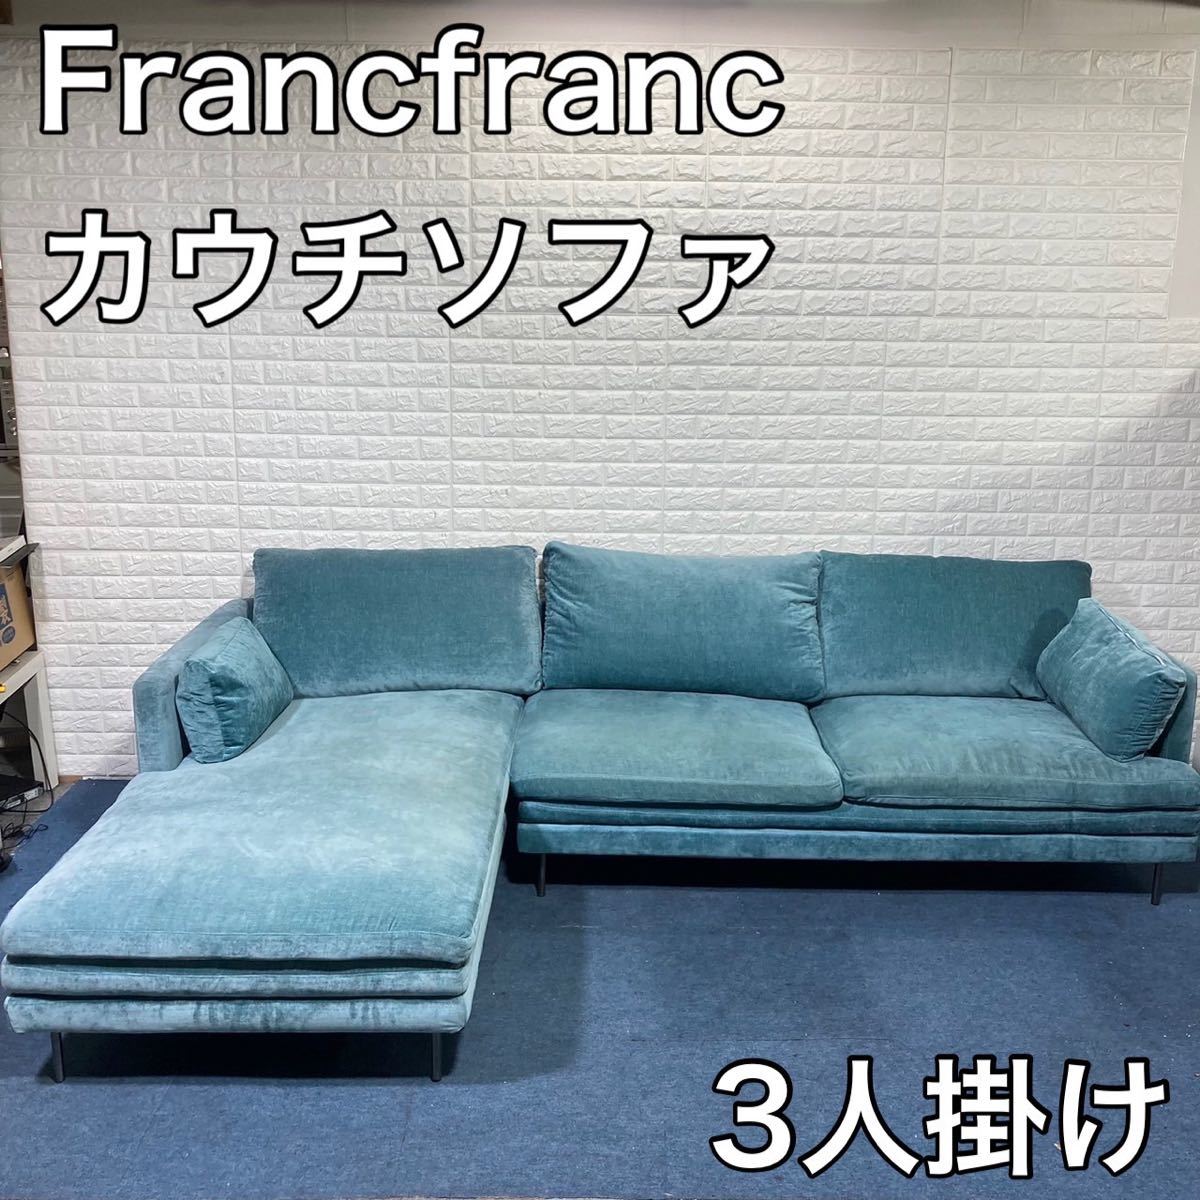 Francfranc フランフラン ラージュ ソファ カウチセット 家具 インテリア おしゃれ A786